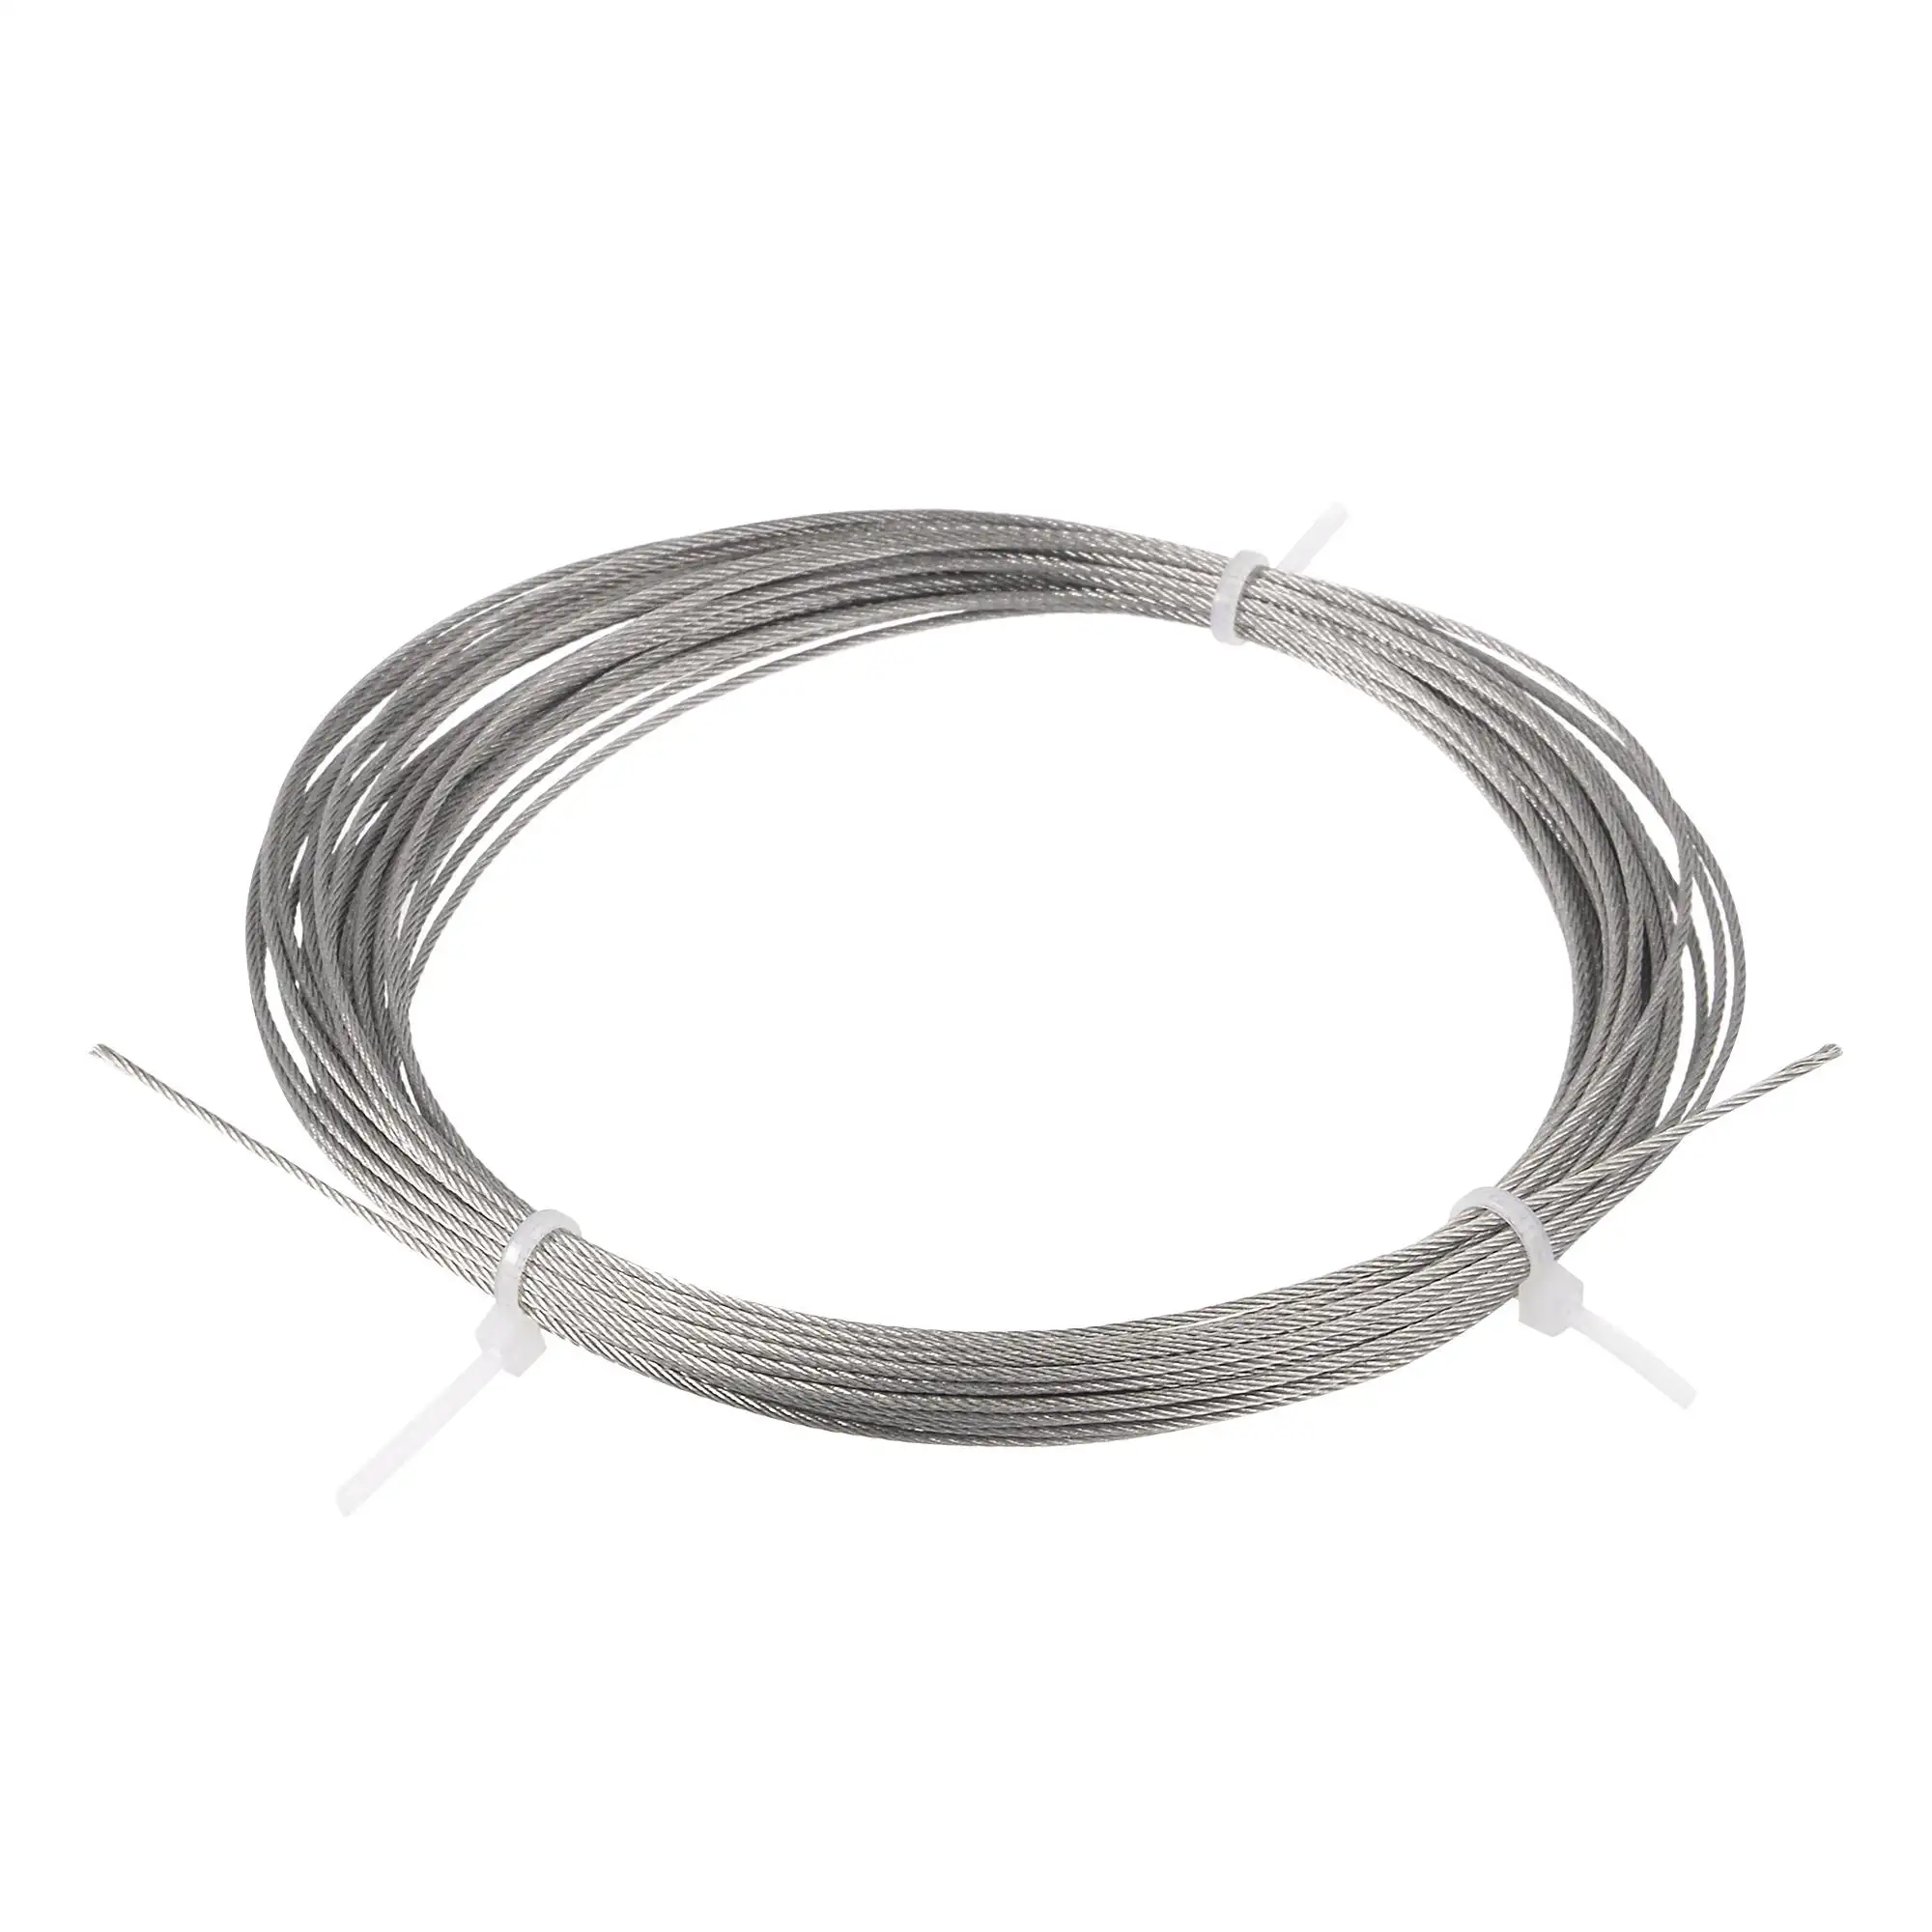 Cable de cuerda de alambre de acero inoxidable de alta resistencia 1*7 1,2mm 1,8mm para grúa torre grúa